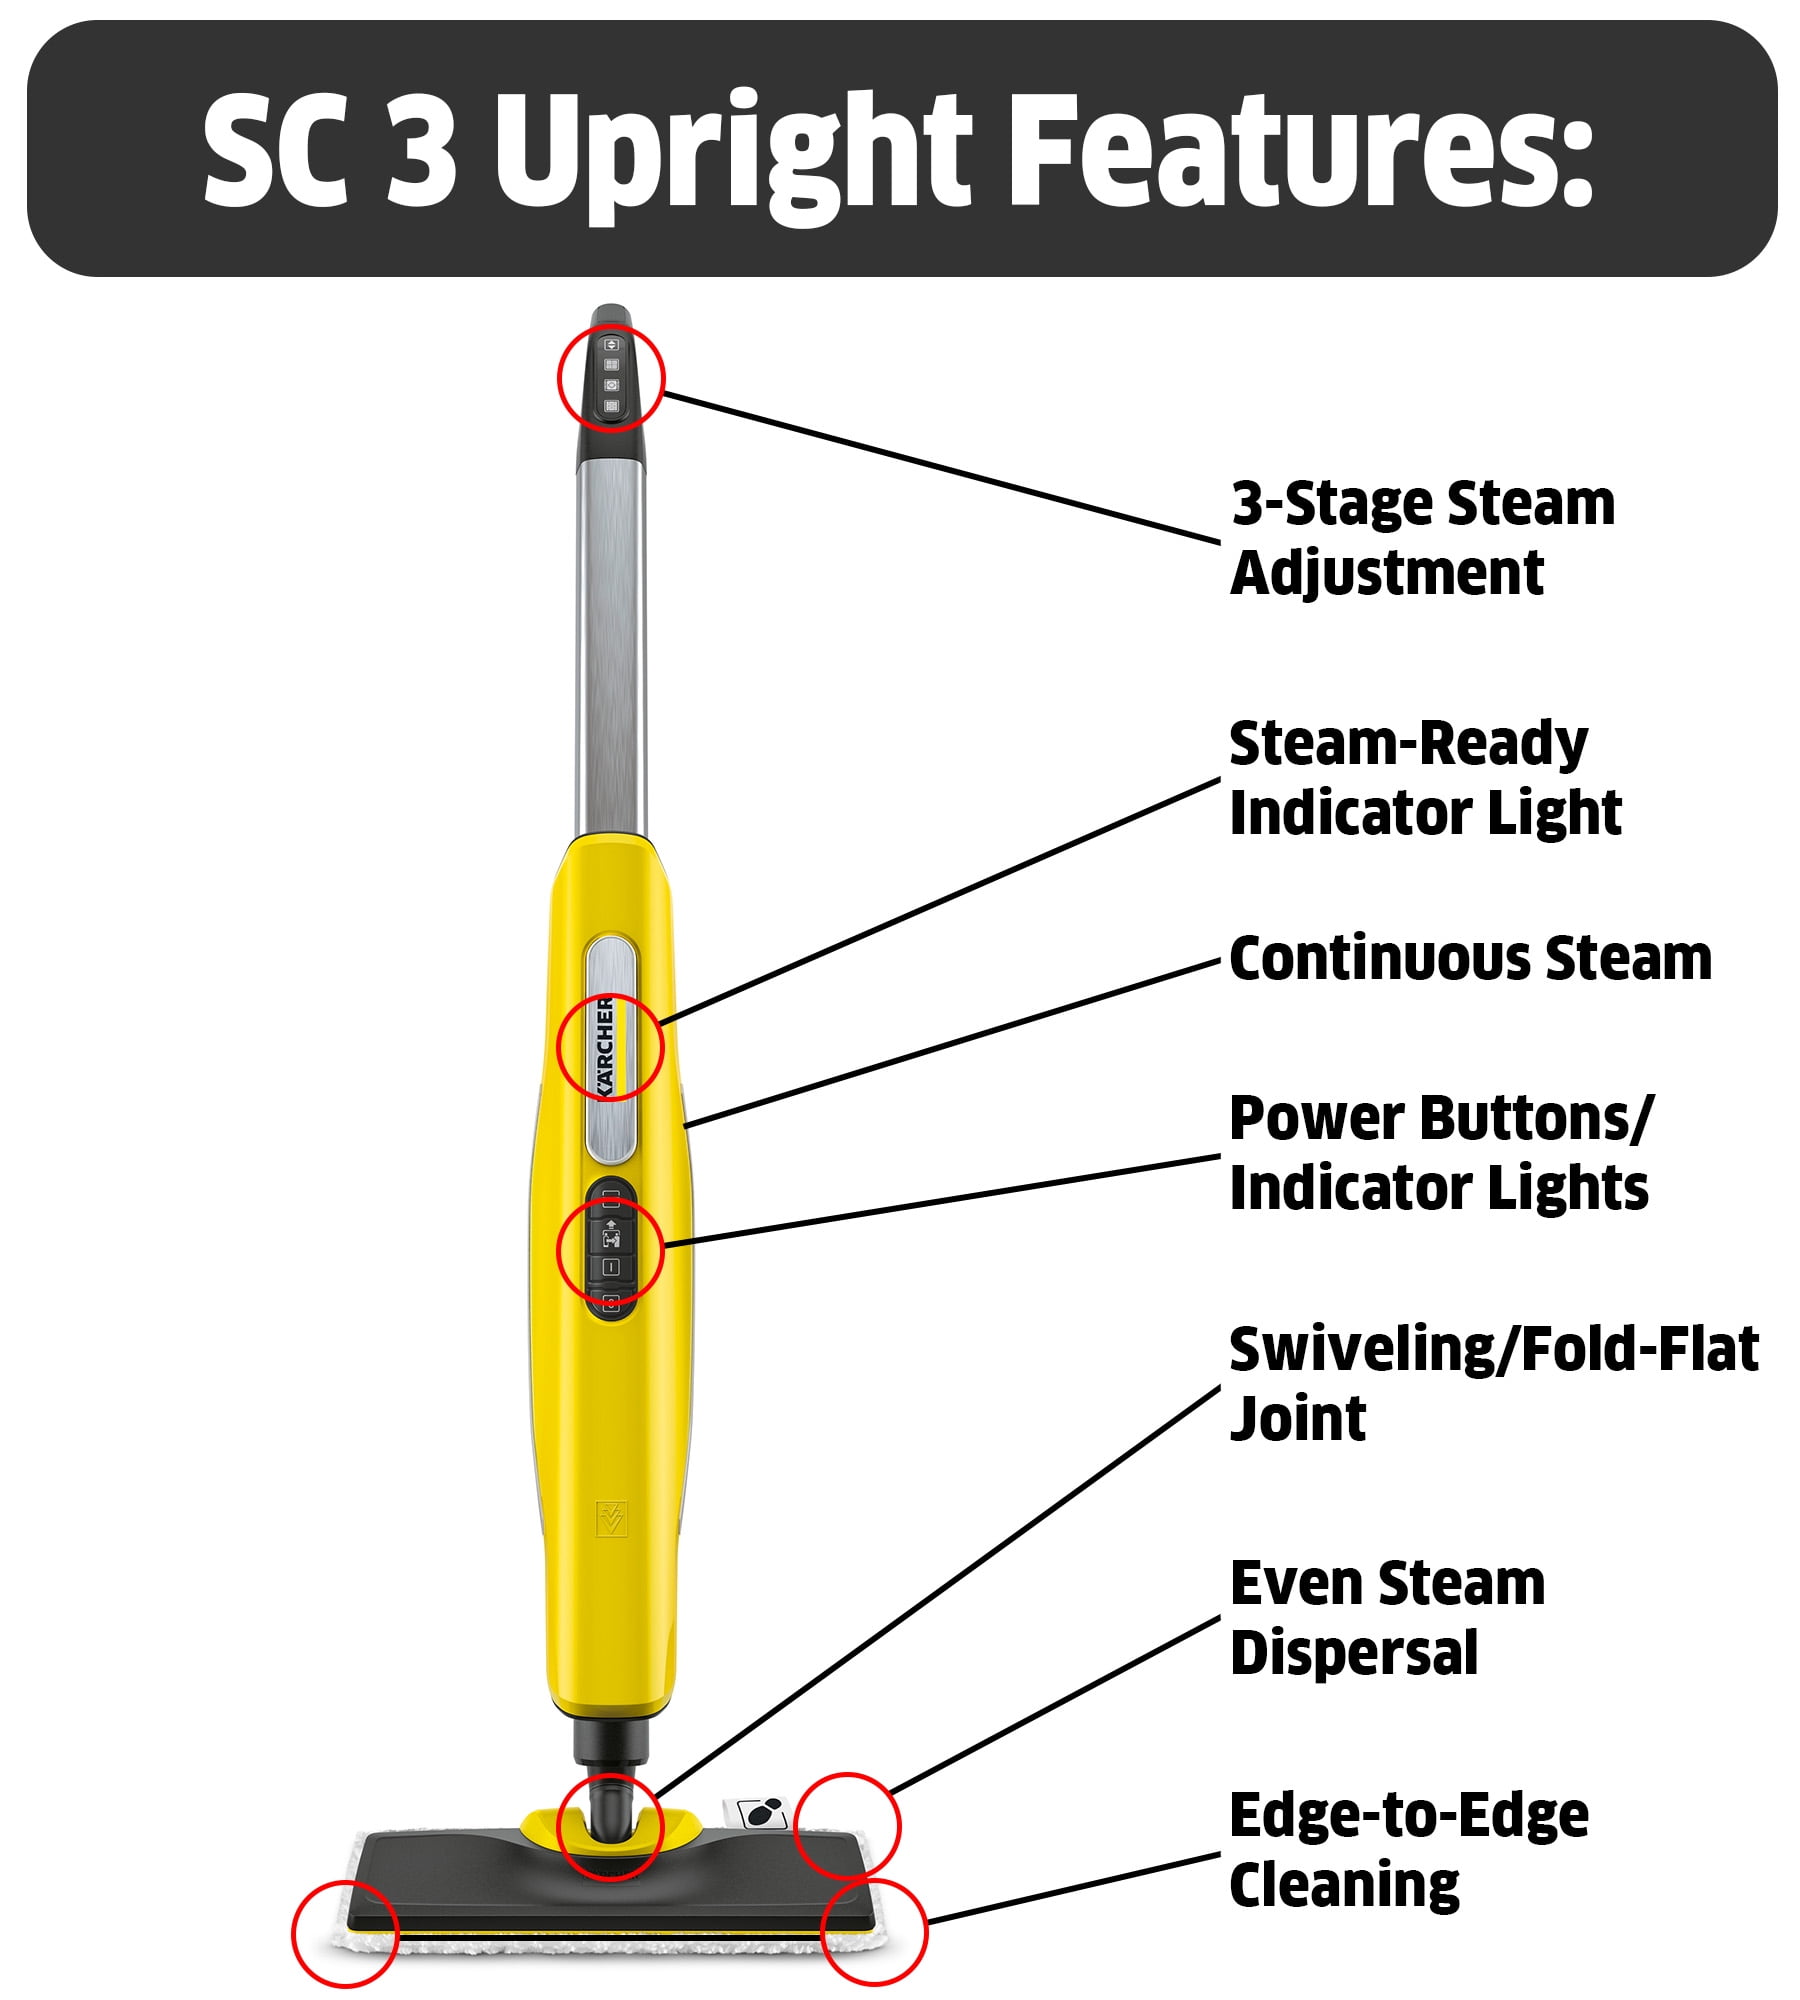 SC3 Upright